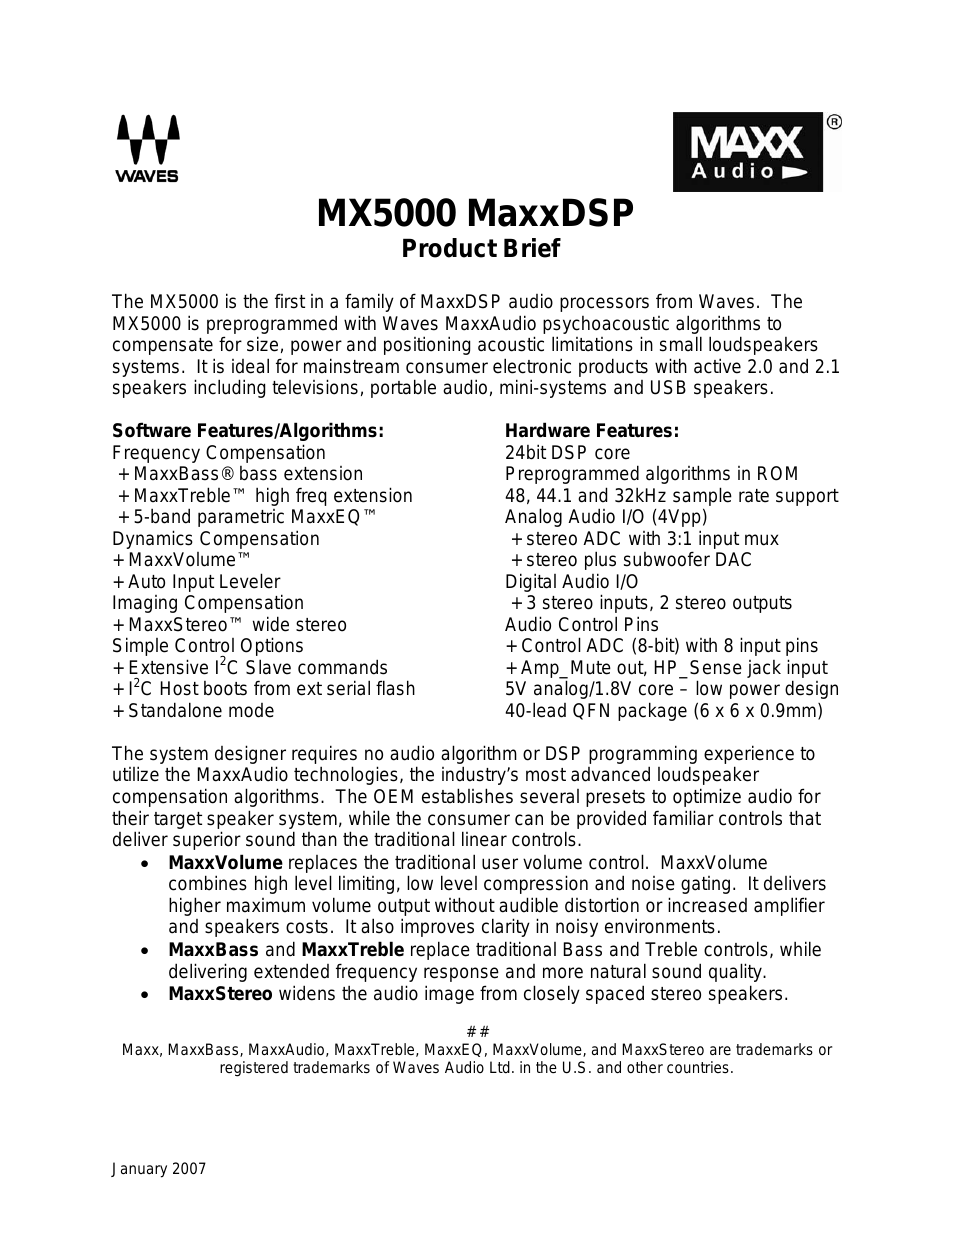 MaxxDSP Audio Processors MX5000